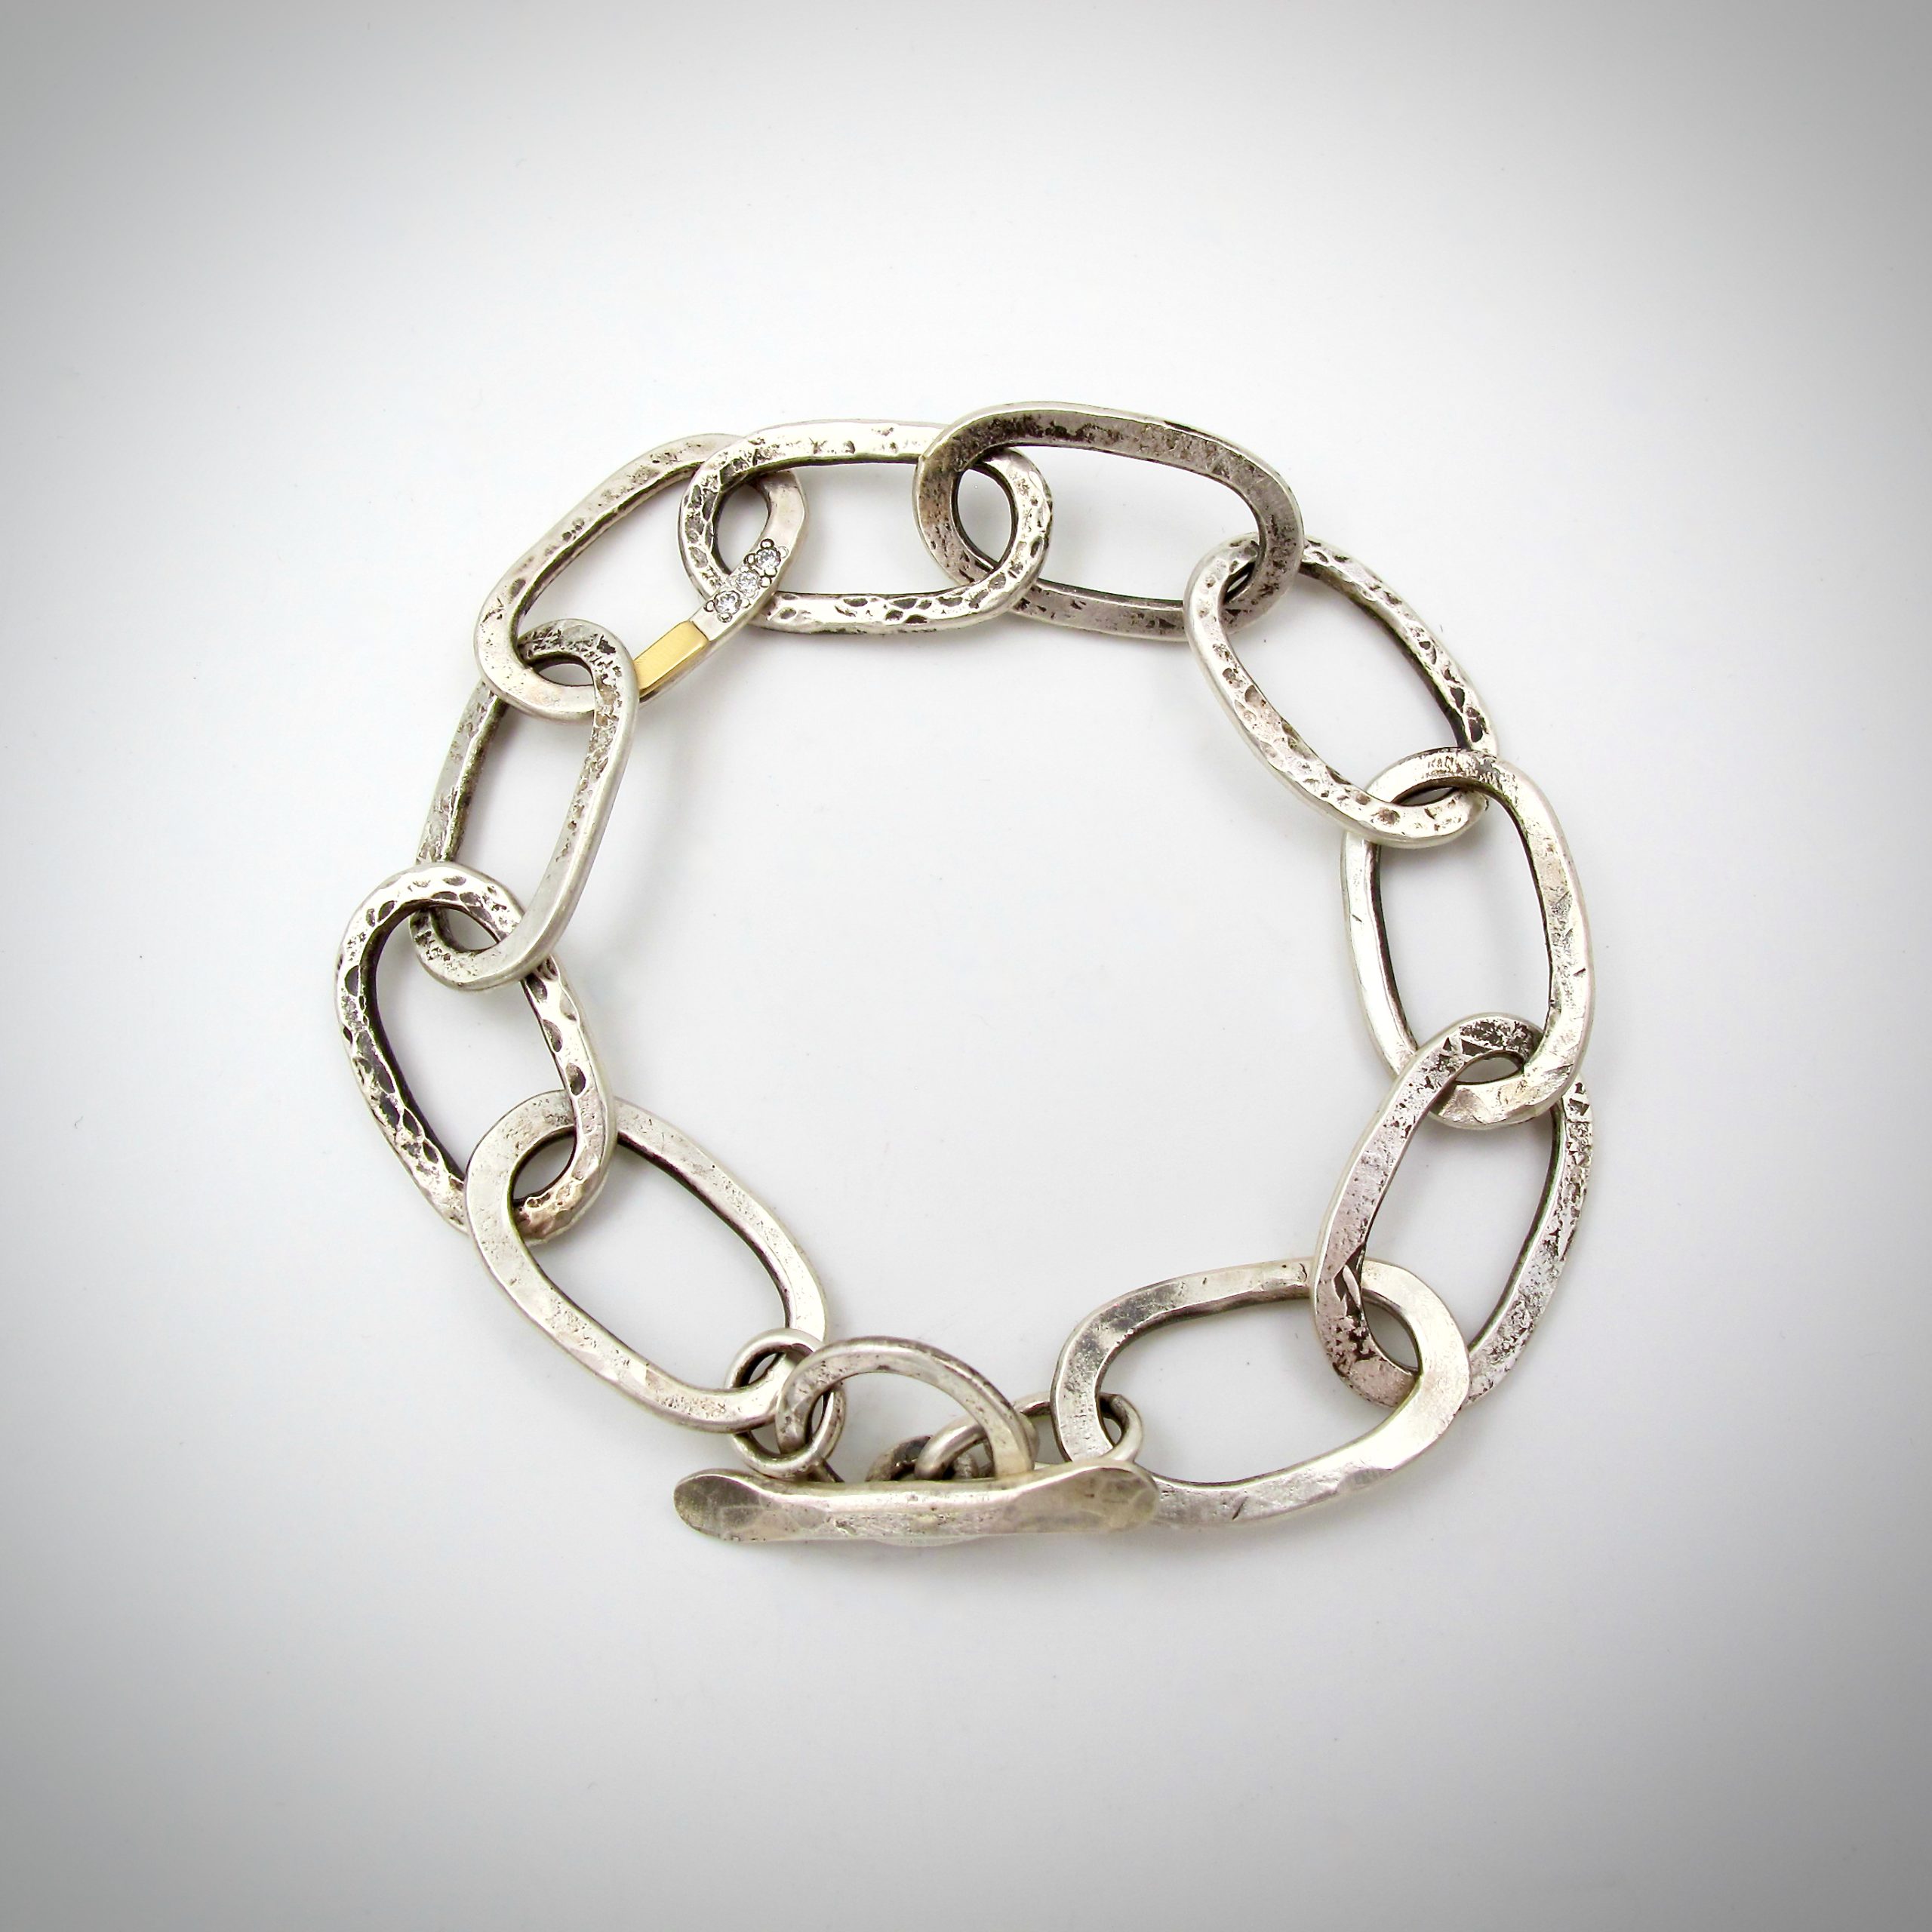 Chain link silver bracelet